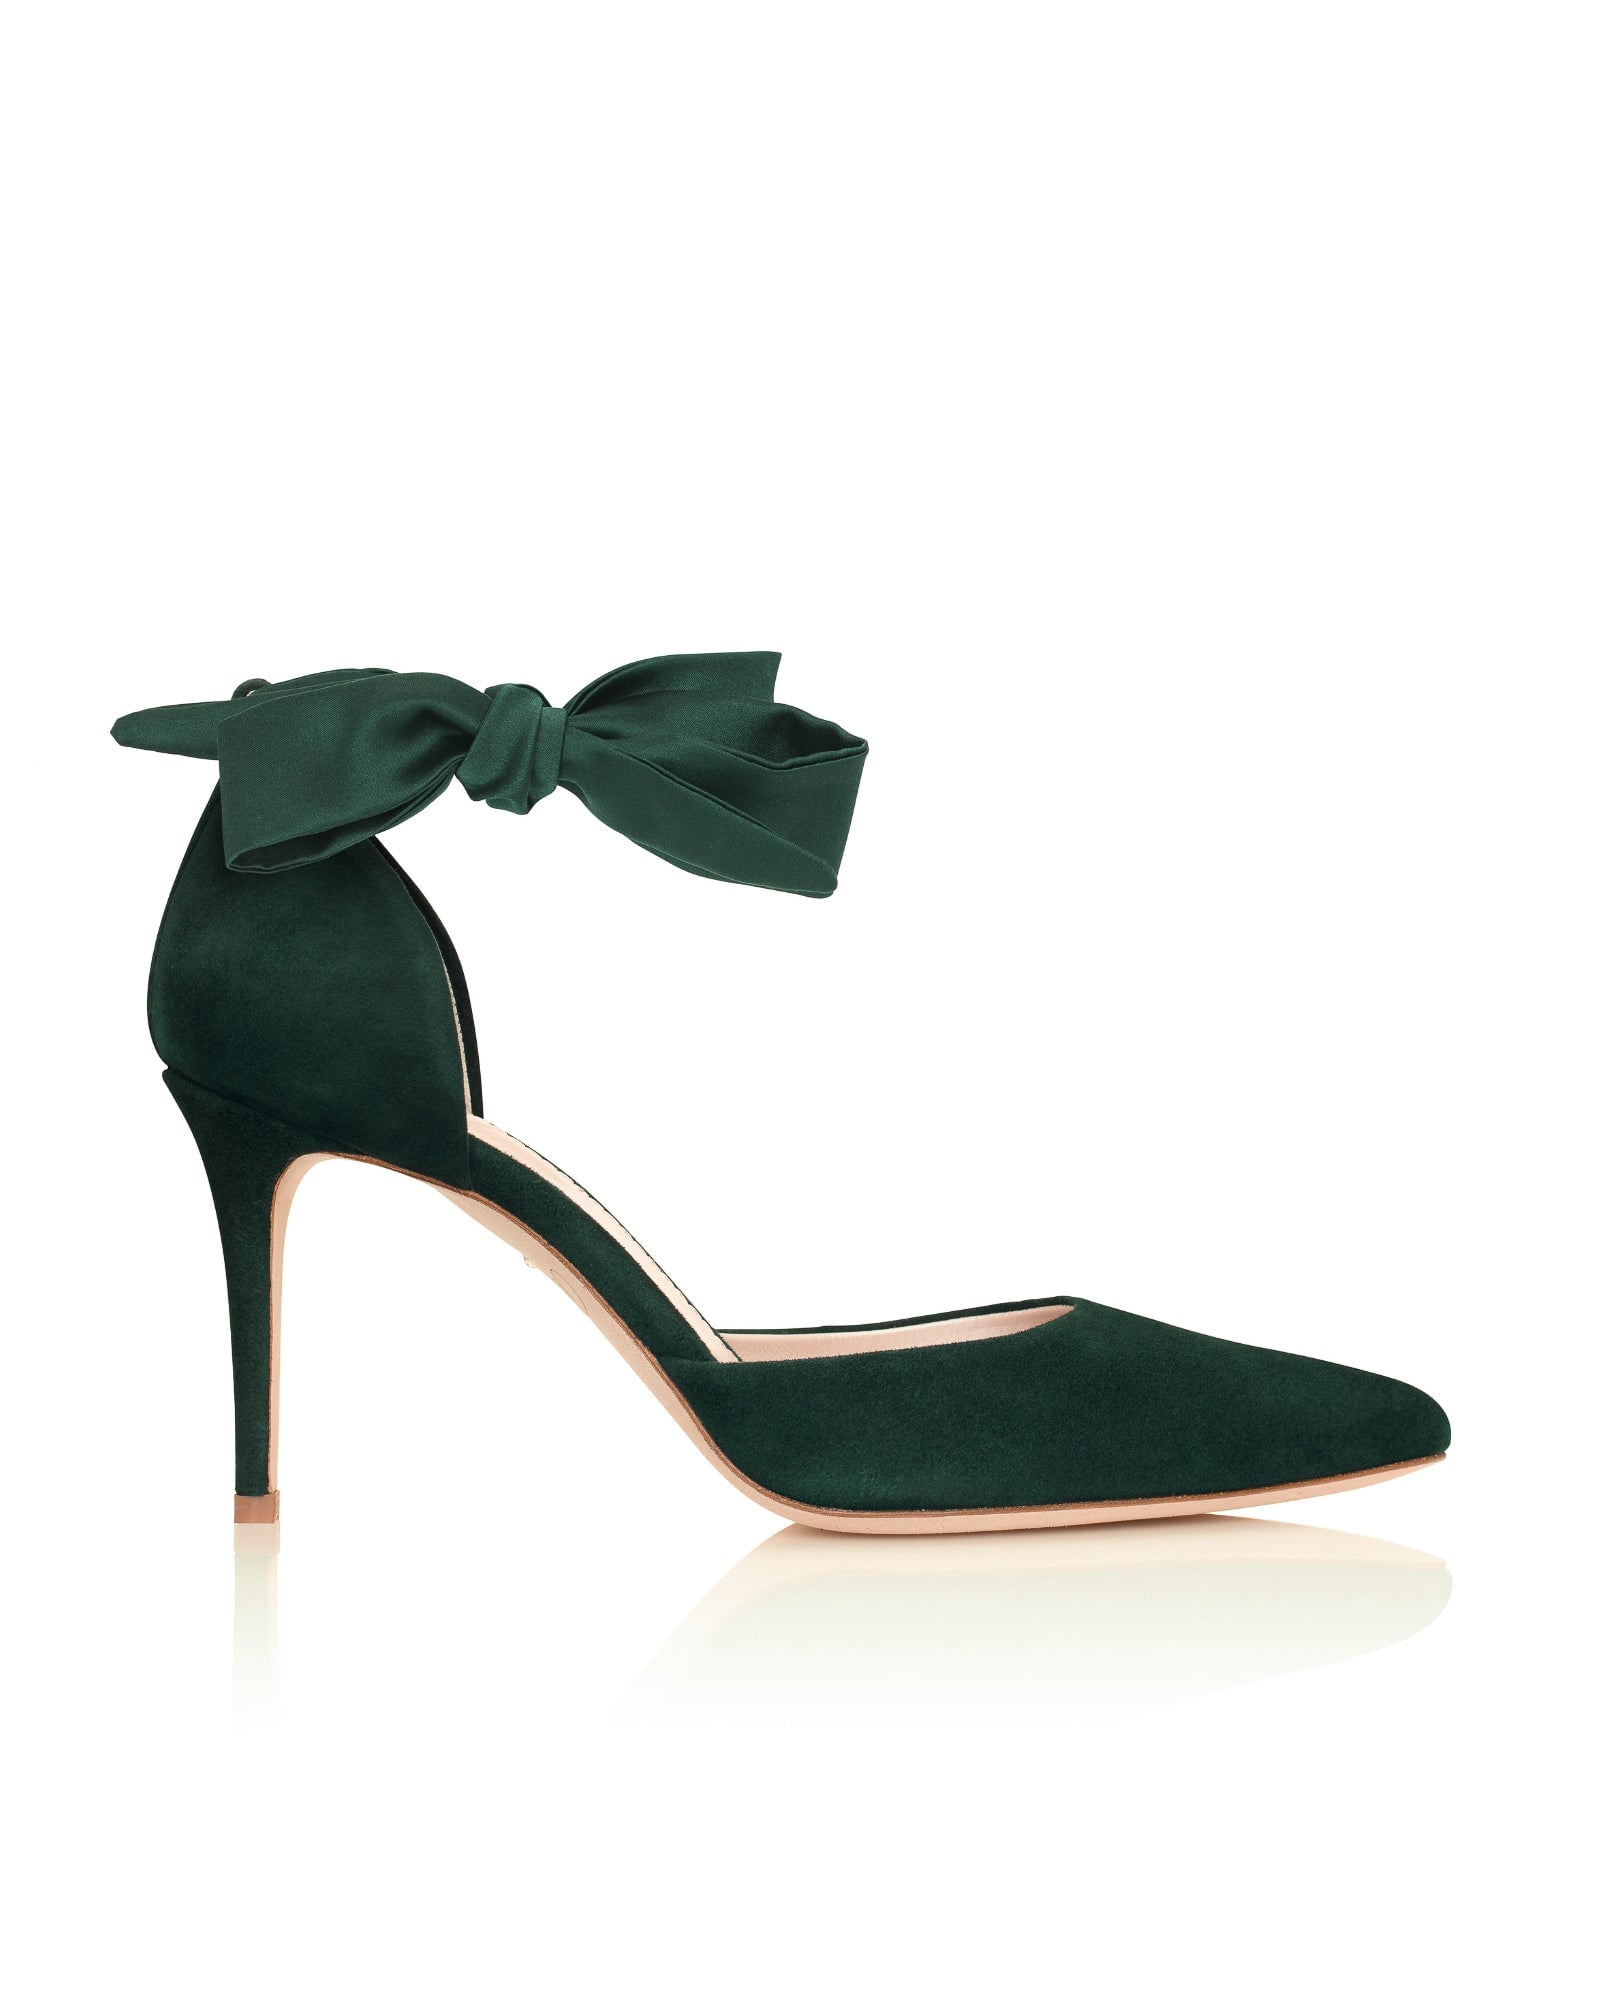 Harriet Mid Heel Fashion Shoe Dark Green Suede Court Shoes  image